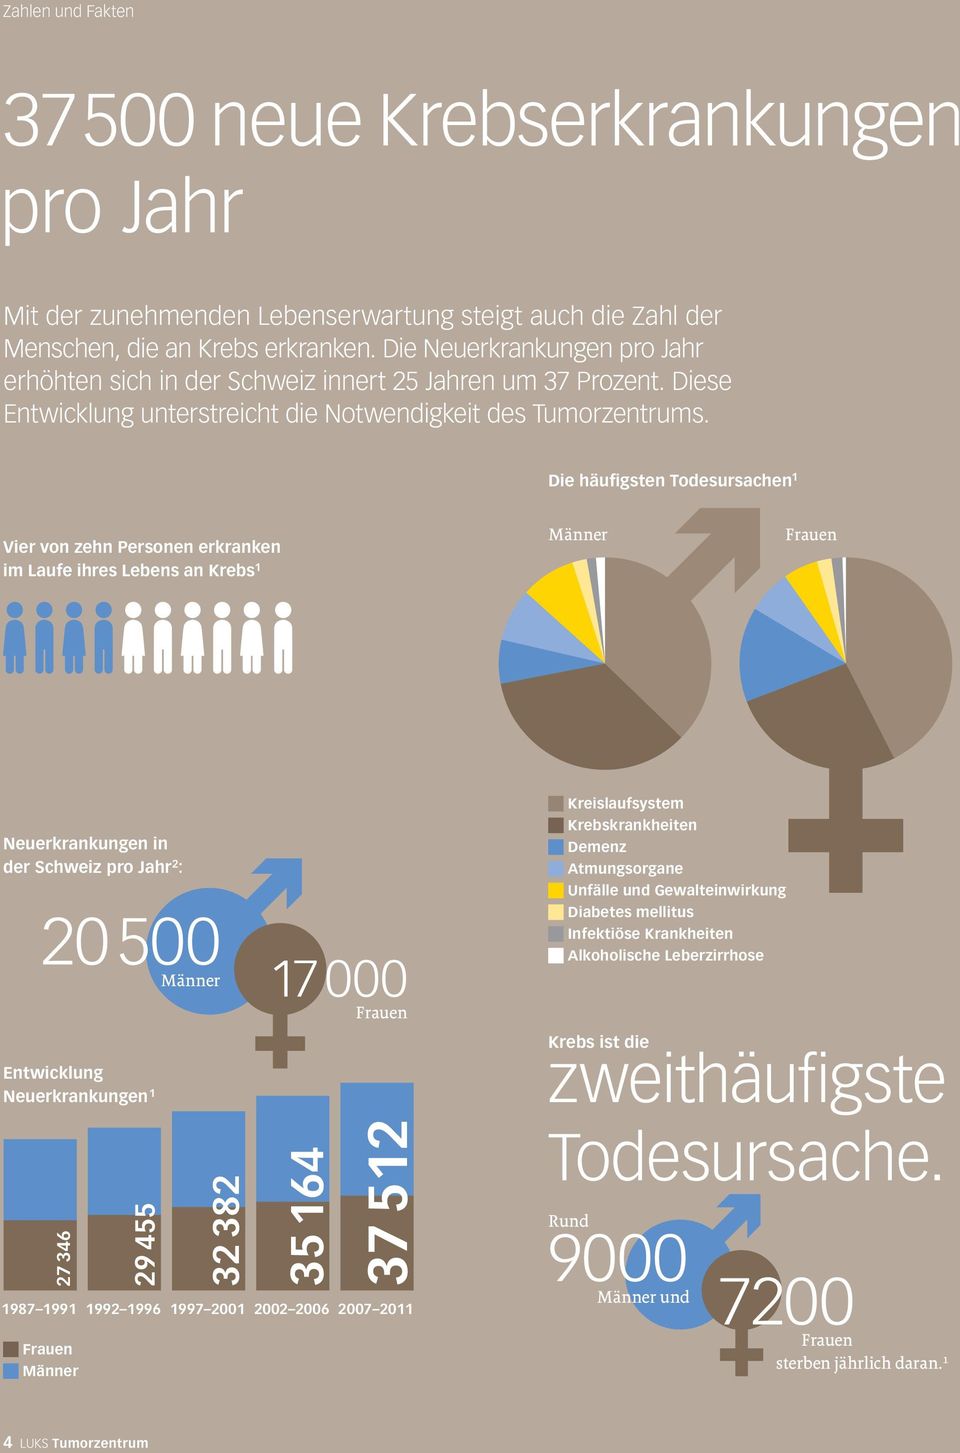 Die häufigsten Todesursachen 1 Vier von zehn Personen erkranken im Laufe ihres Lebens an Krebs 1 Männer Frauen Neuerkrankungen in der Schweiz pro Jahr 2 : 20 500 Männer 17 000 Frauen Entwicklung